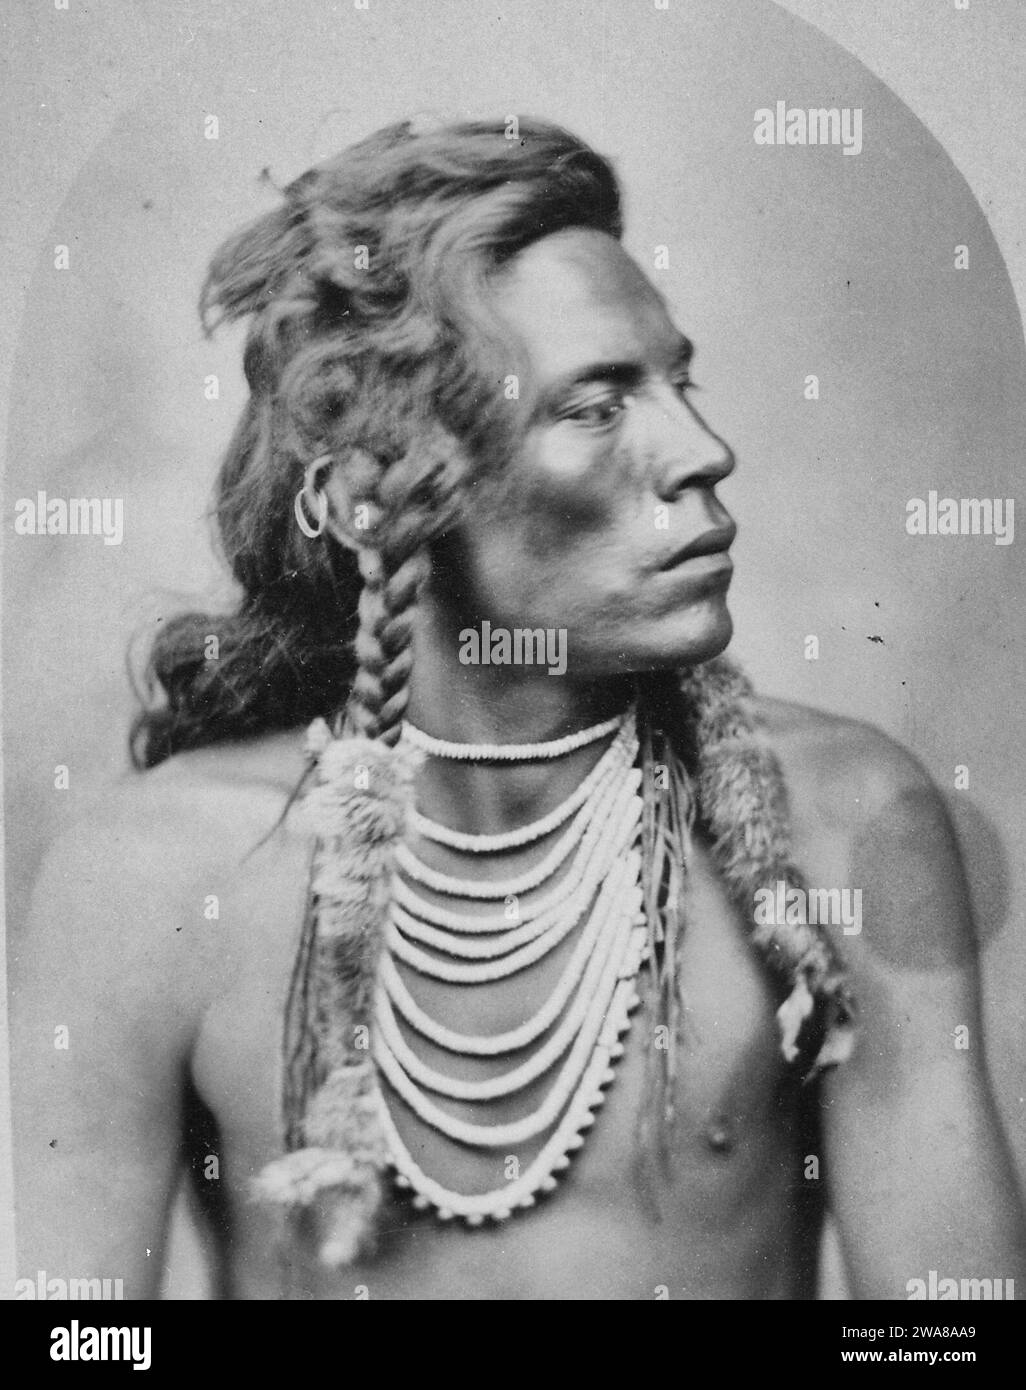 Porträt von Curley, Einem Krähen-Indianer-Pfadfinder mit der 7. Kavallerie in der Schlacht am Little Bighorn Stockfoto